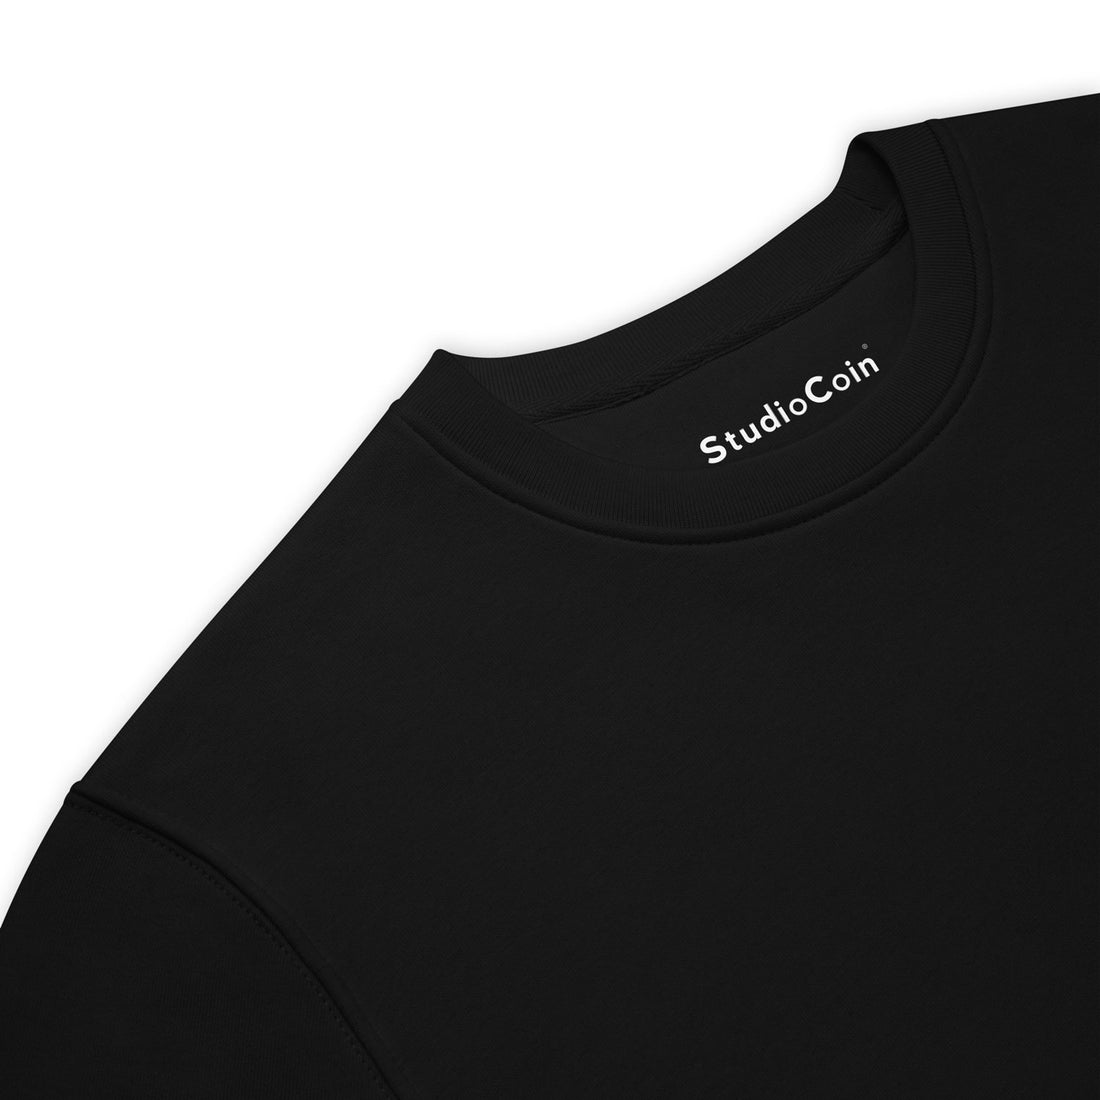 solana logo sweatshirt black crypto merch 